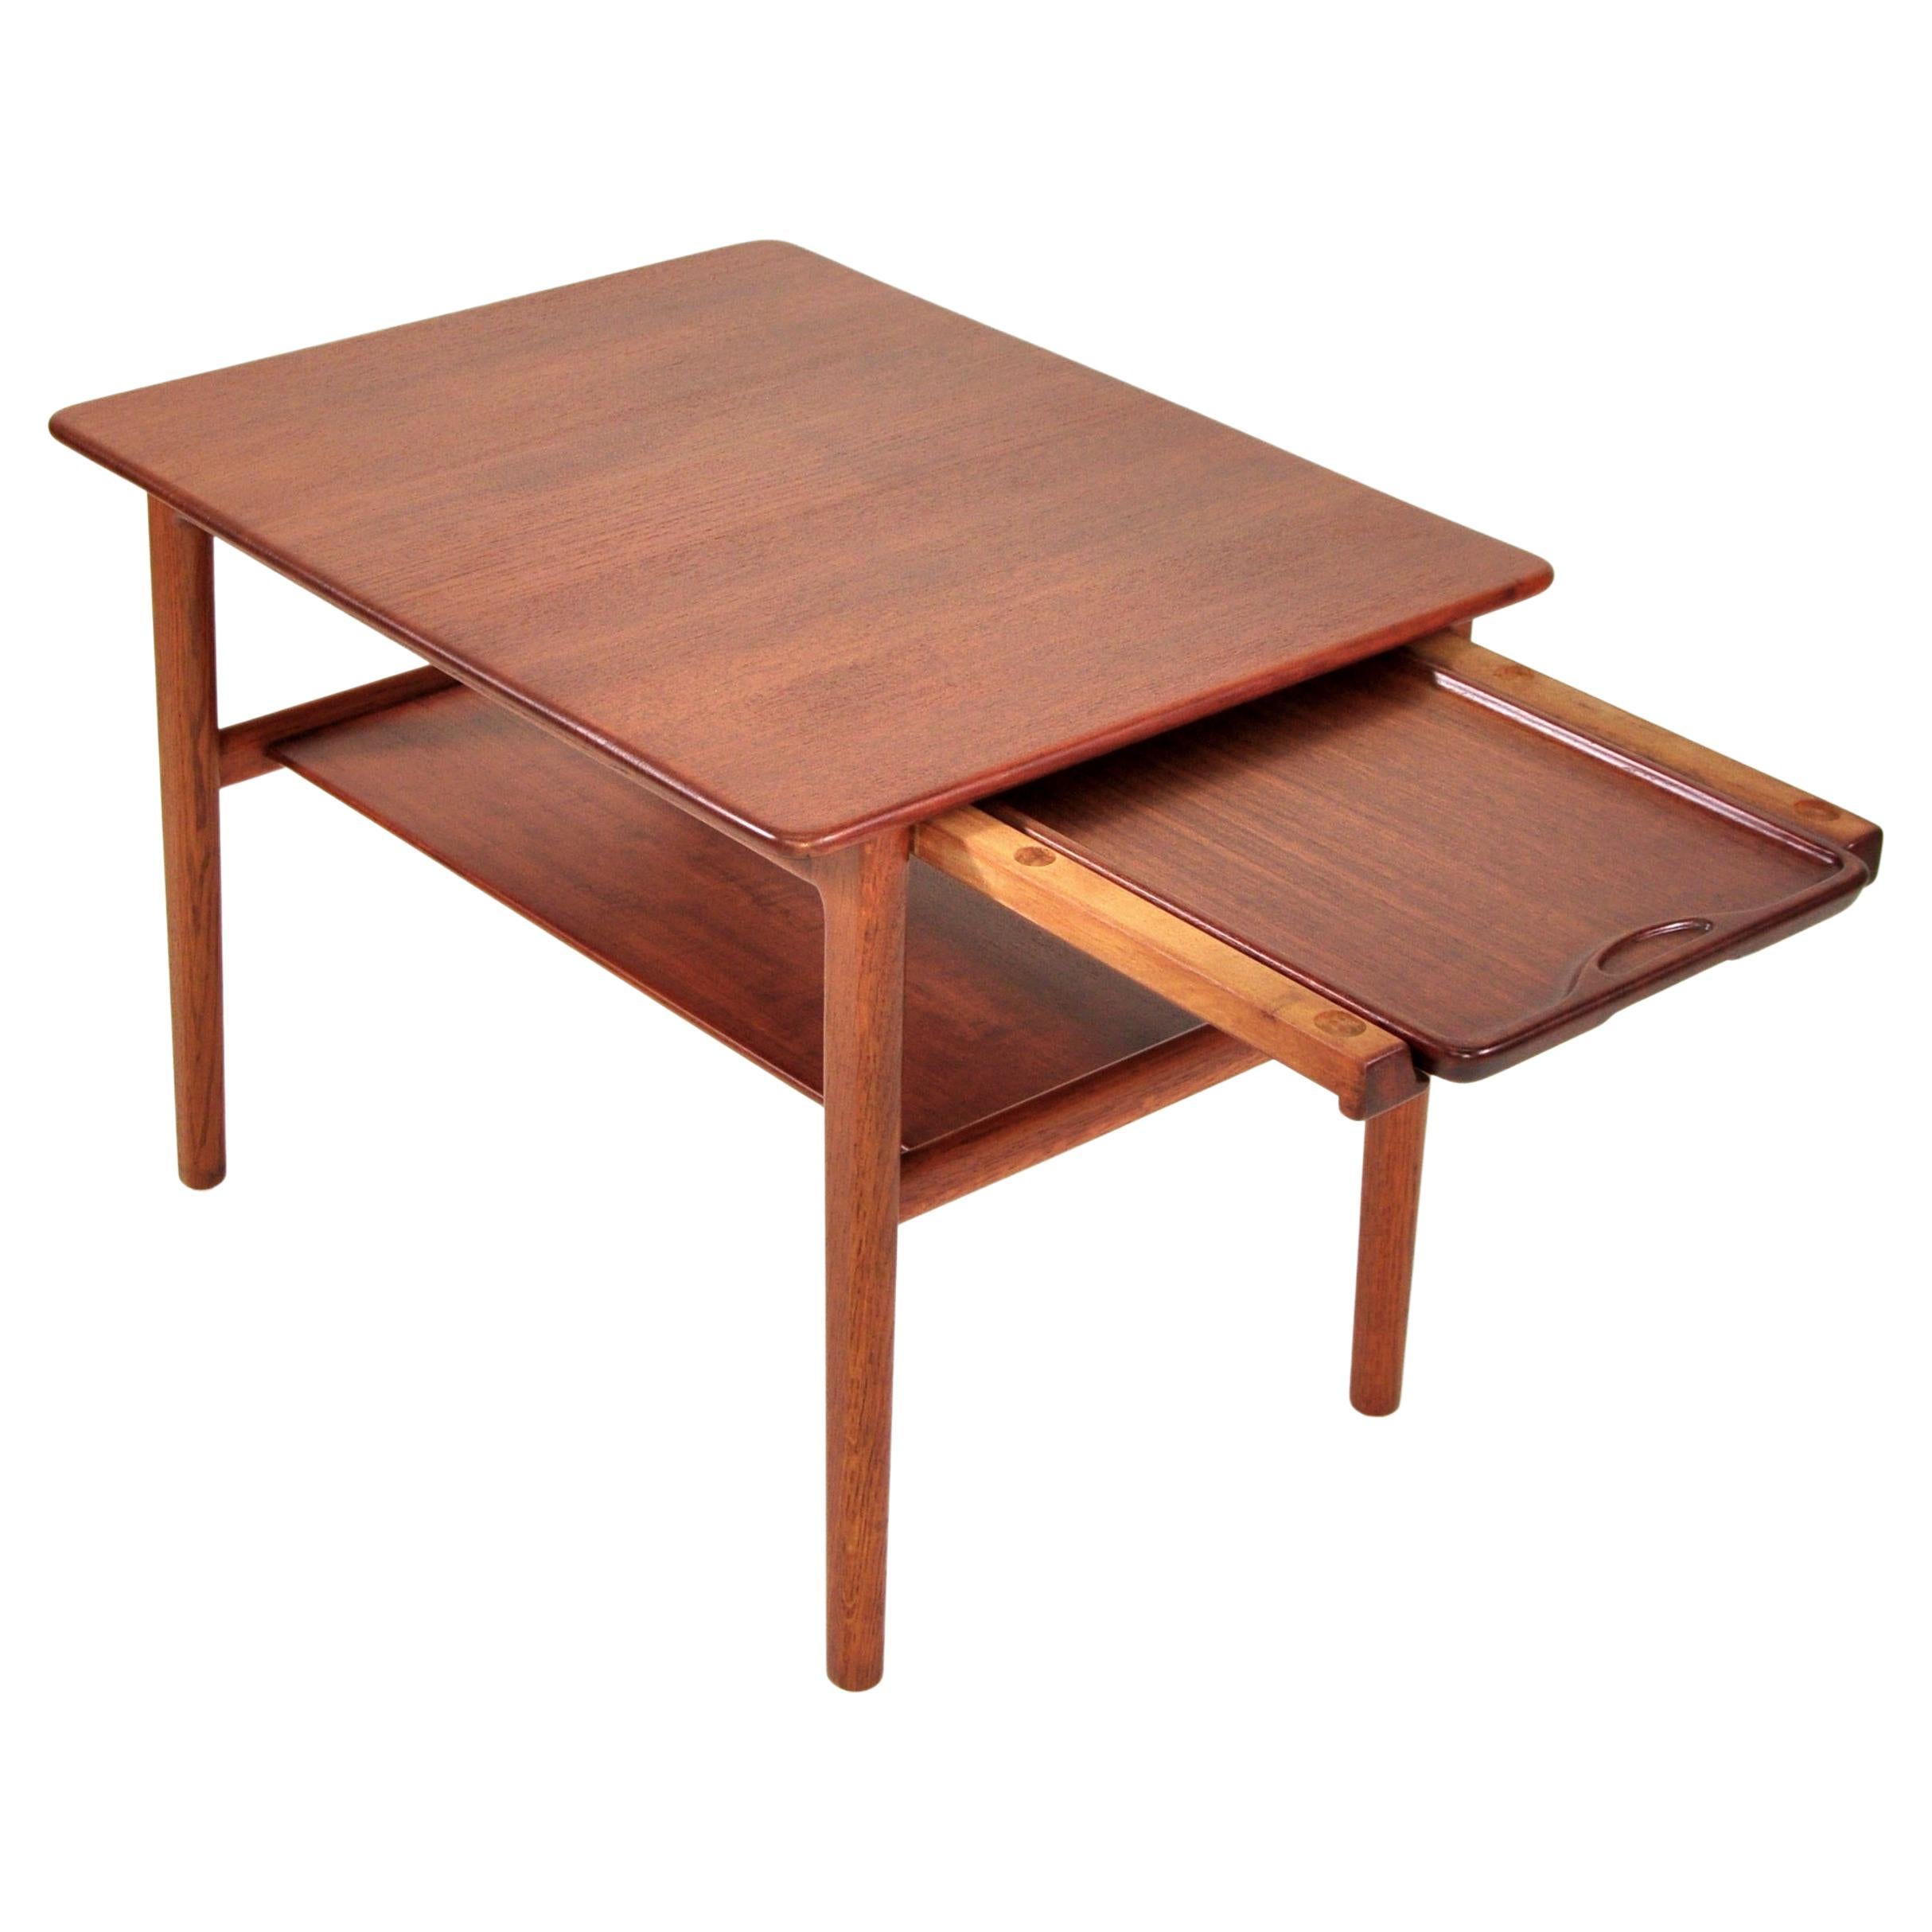 Hans Wegner Teak Table with Hidden Tray, Johannes Hansen, 1960s For Sale 4